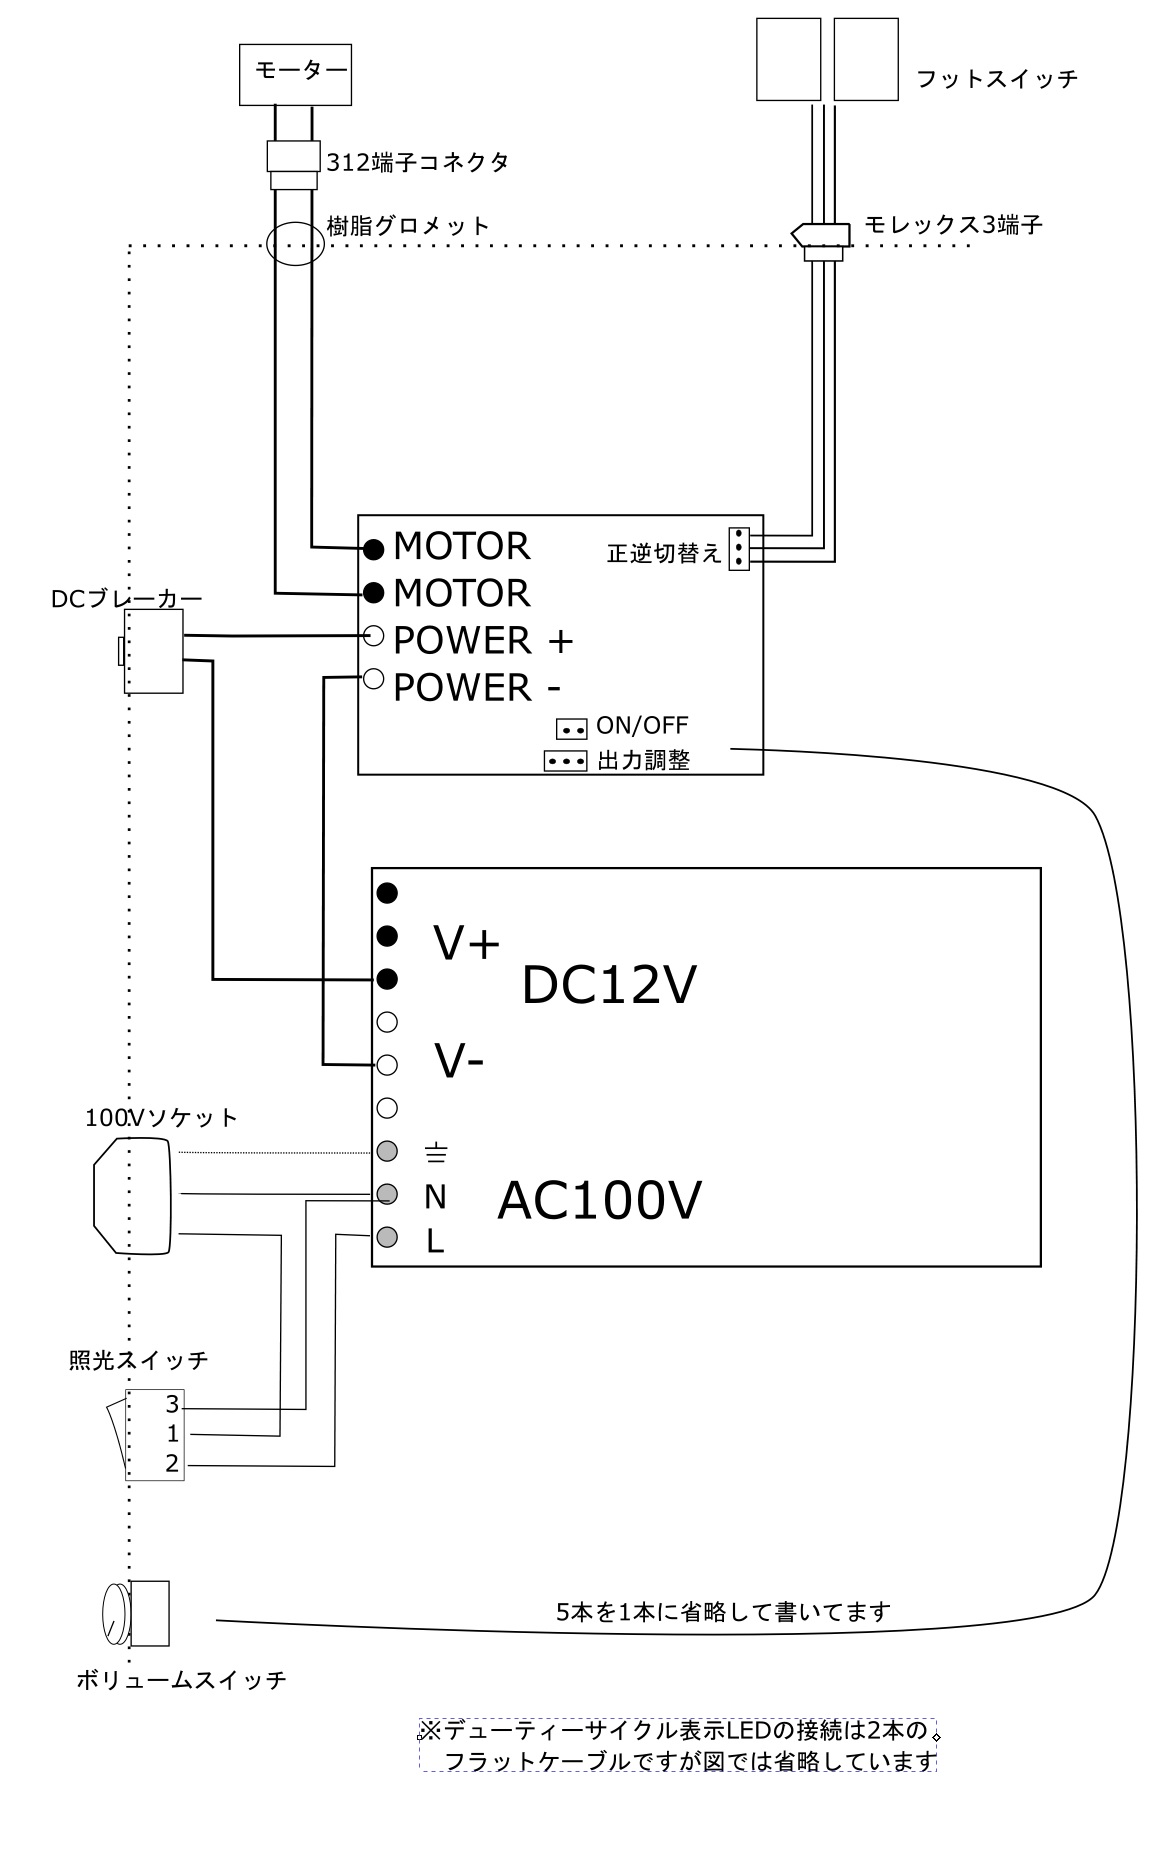 ビードローラー電動化キットの配線図